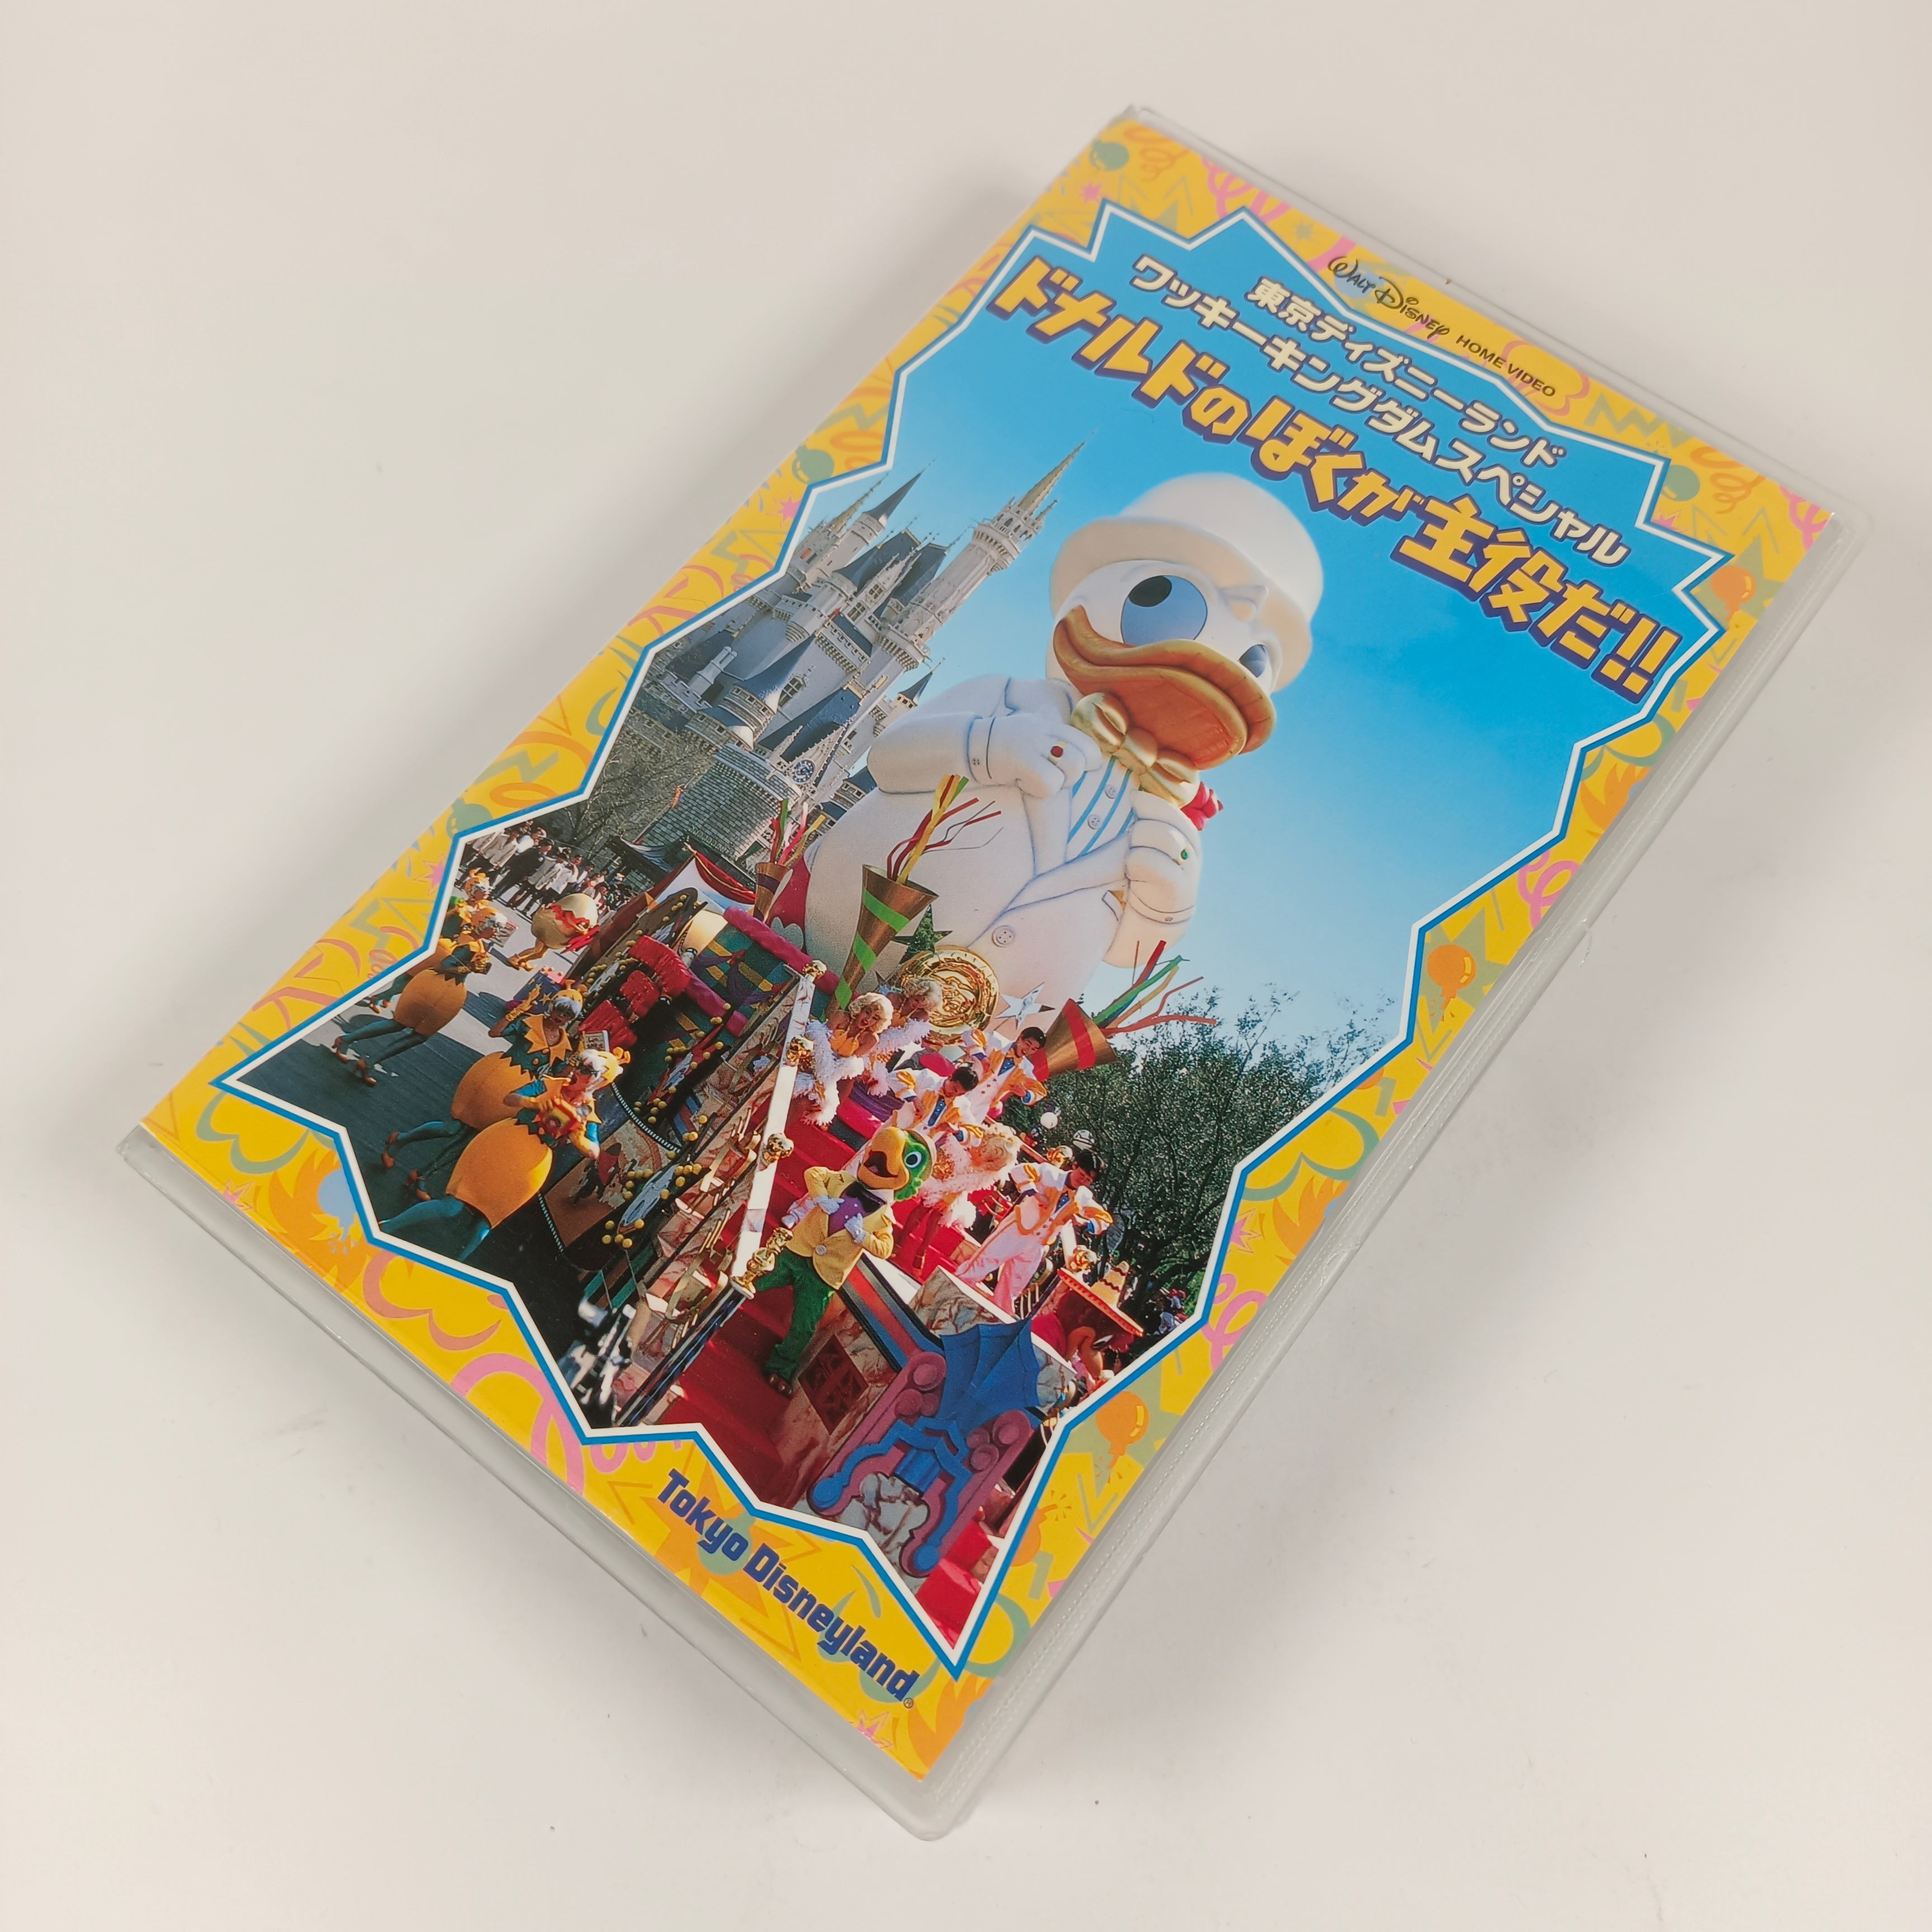 Tokyo Disneyland Wacky Kingdom Special : Donald